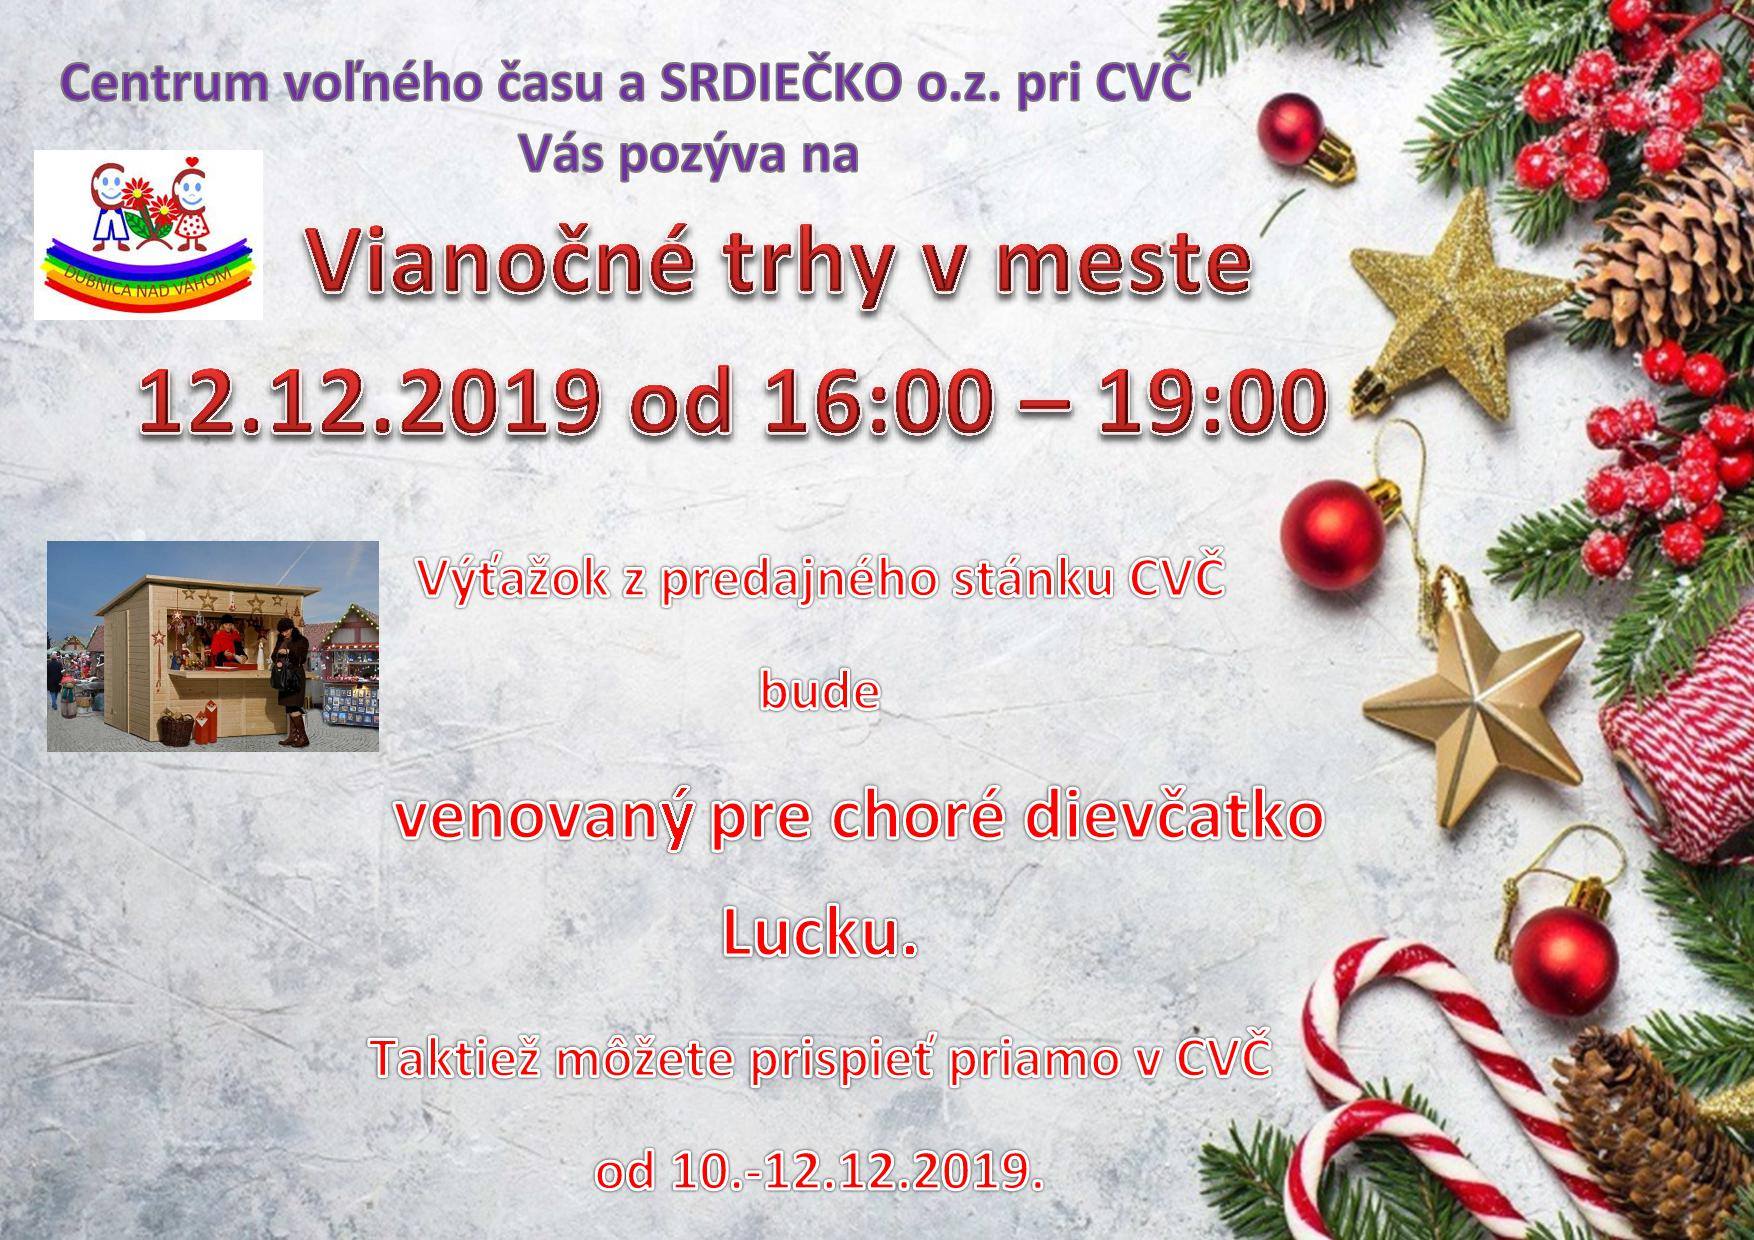 Vianočné trhy v meste - Cvč Dubnica nad Váhom